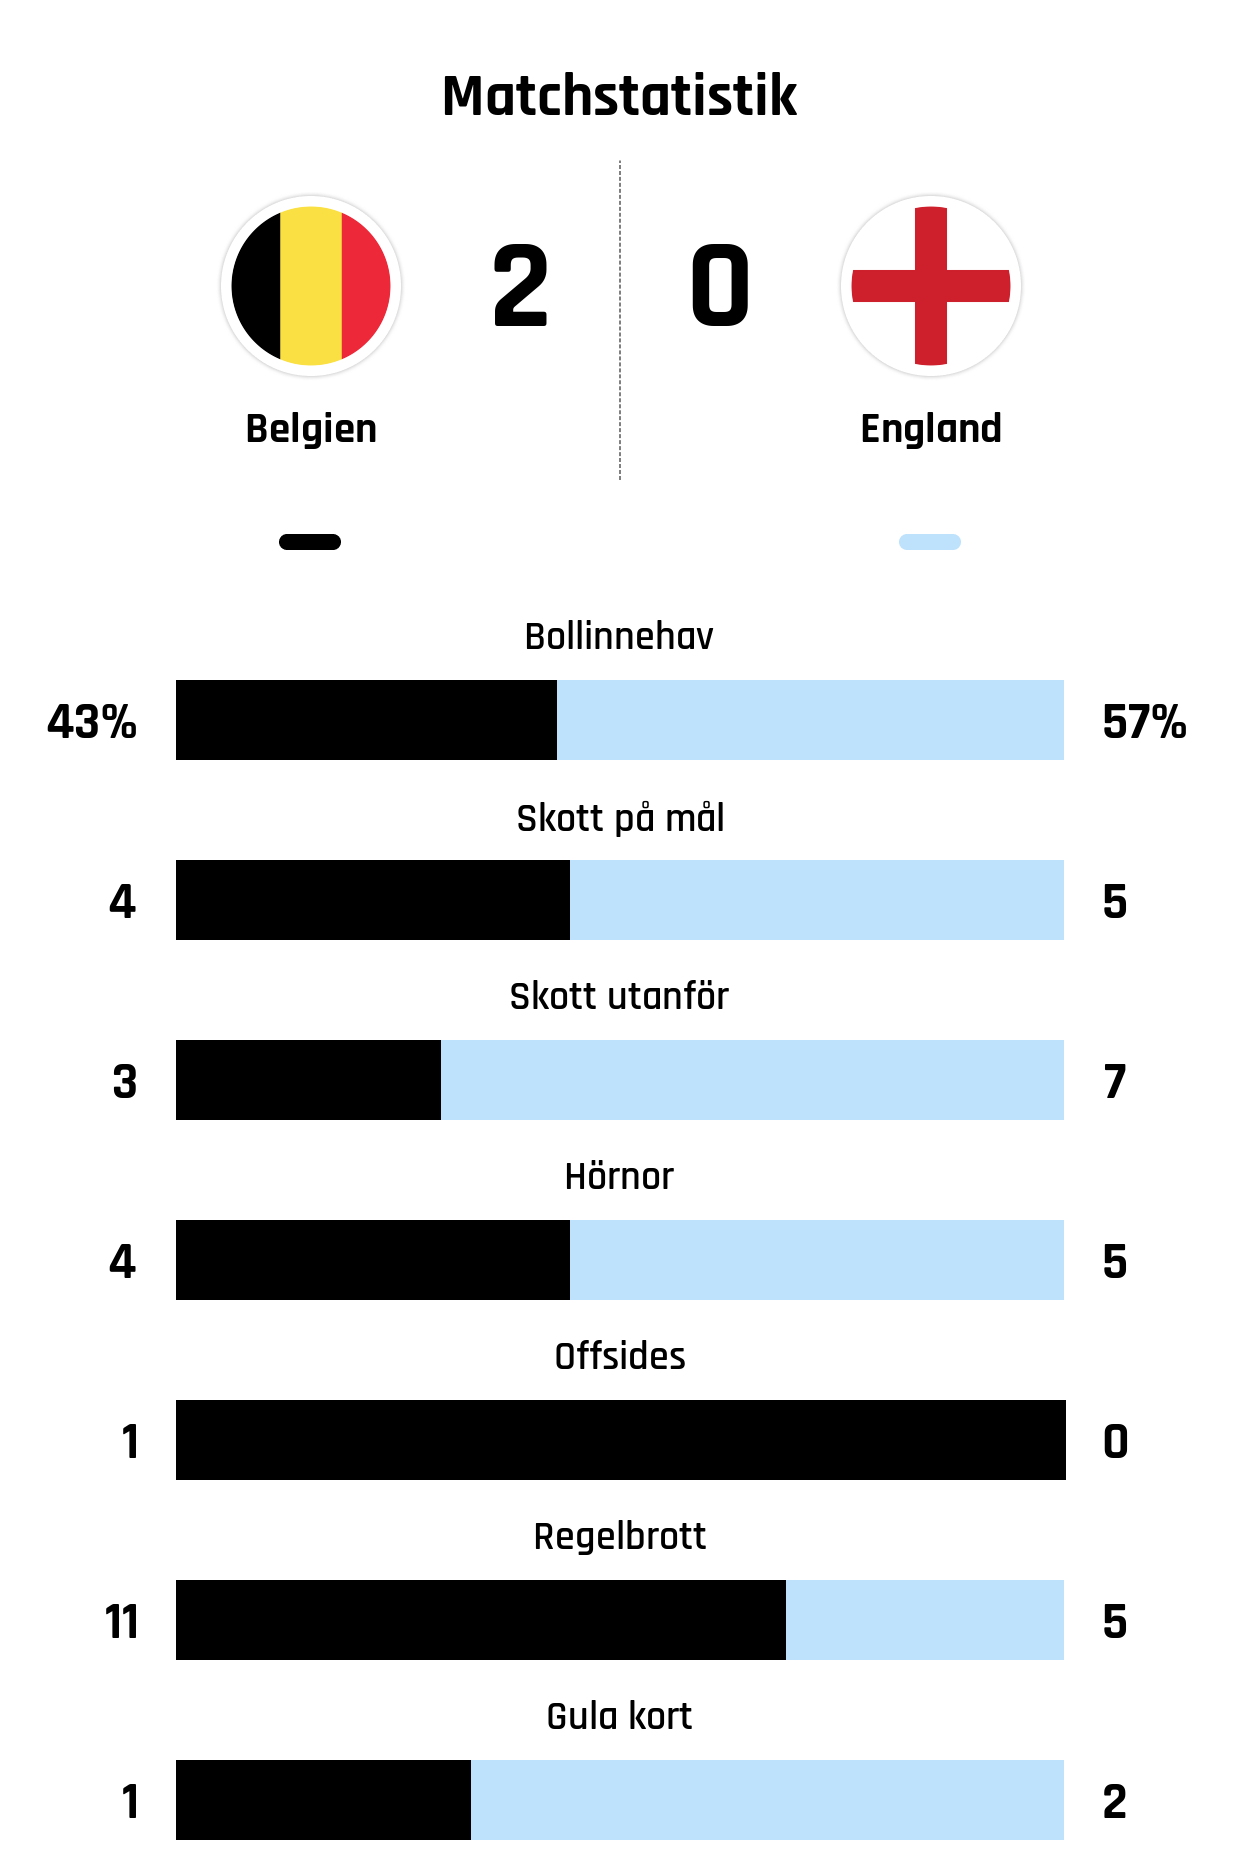 Bollinnehav 43%-57%
Skott på mål 4-5
Skott utanför 3-7
Hörnor 4-5
Offsides 1-0
Regelbrott 11-5
Gula kort 1-2